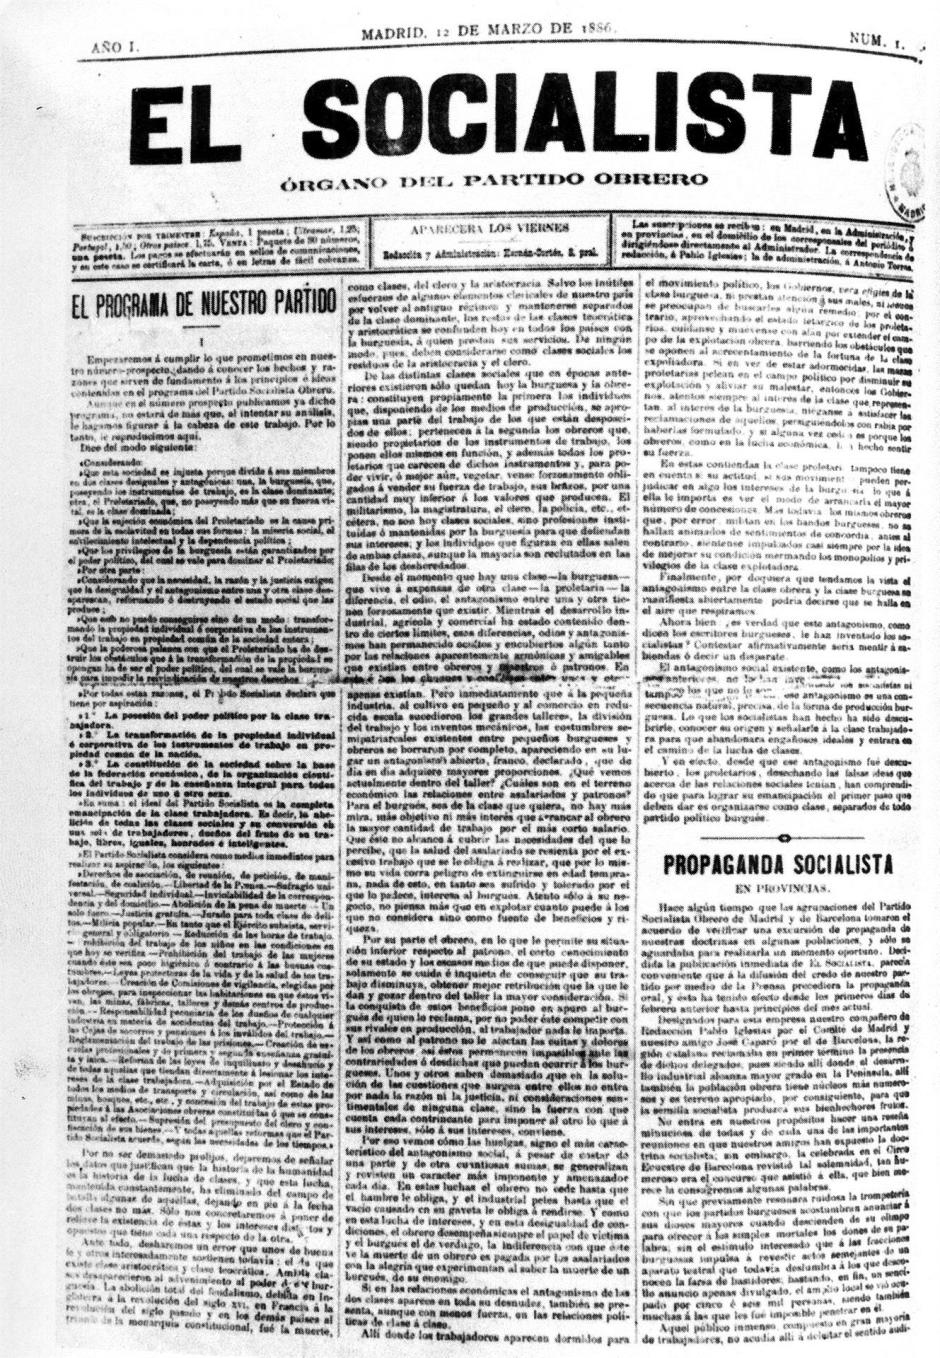 Portada del número 1 del periódico «El Socialista», órgano del Partido Socialista Obrero Español (PSOE) desde su fundación, el 12 de marzo de 1886.